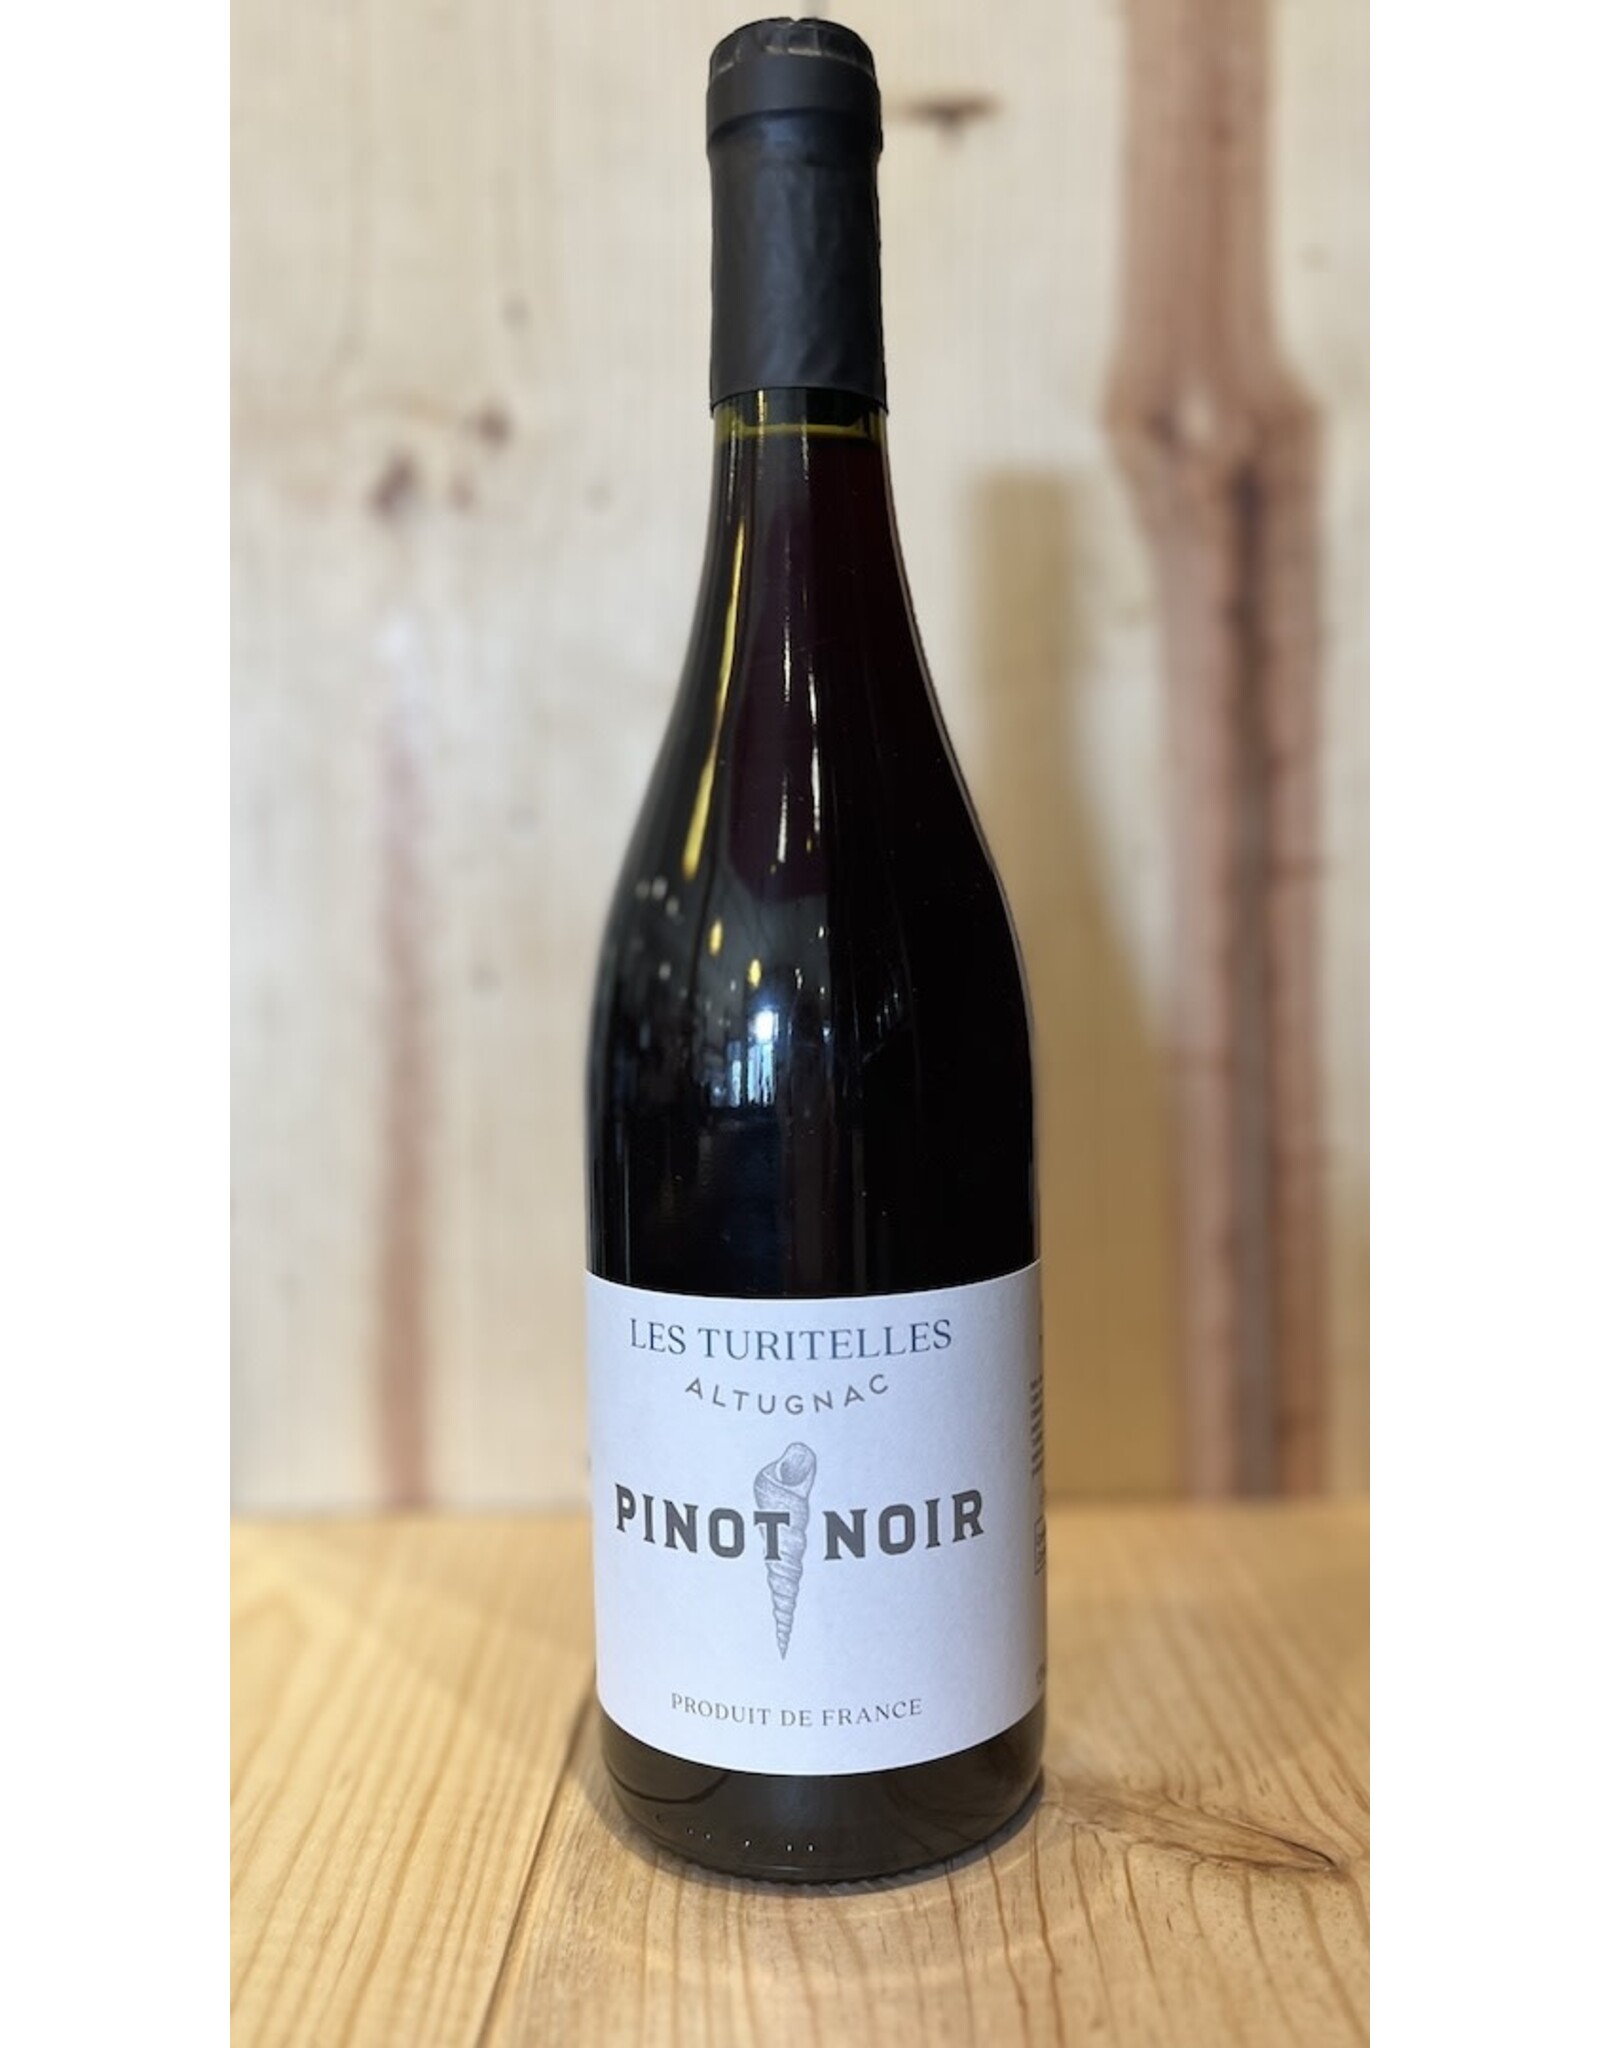 Wine Altugnac Pinot Noir